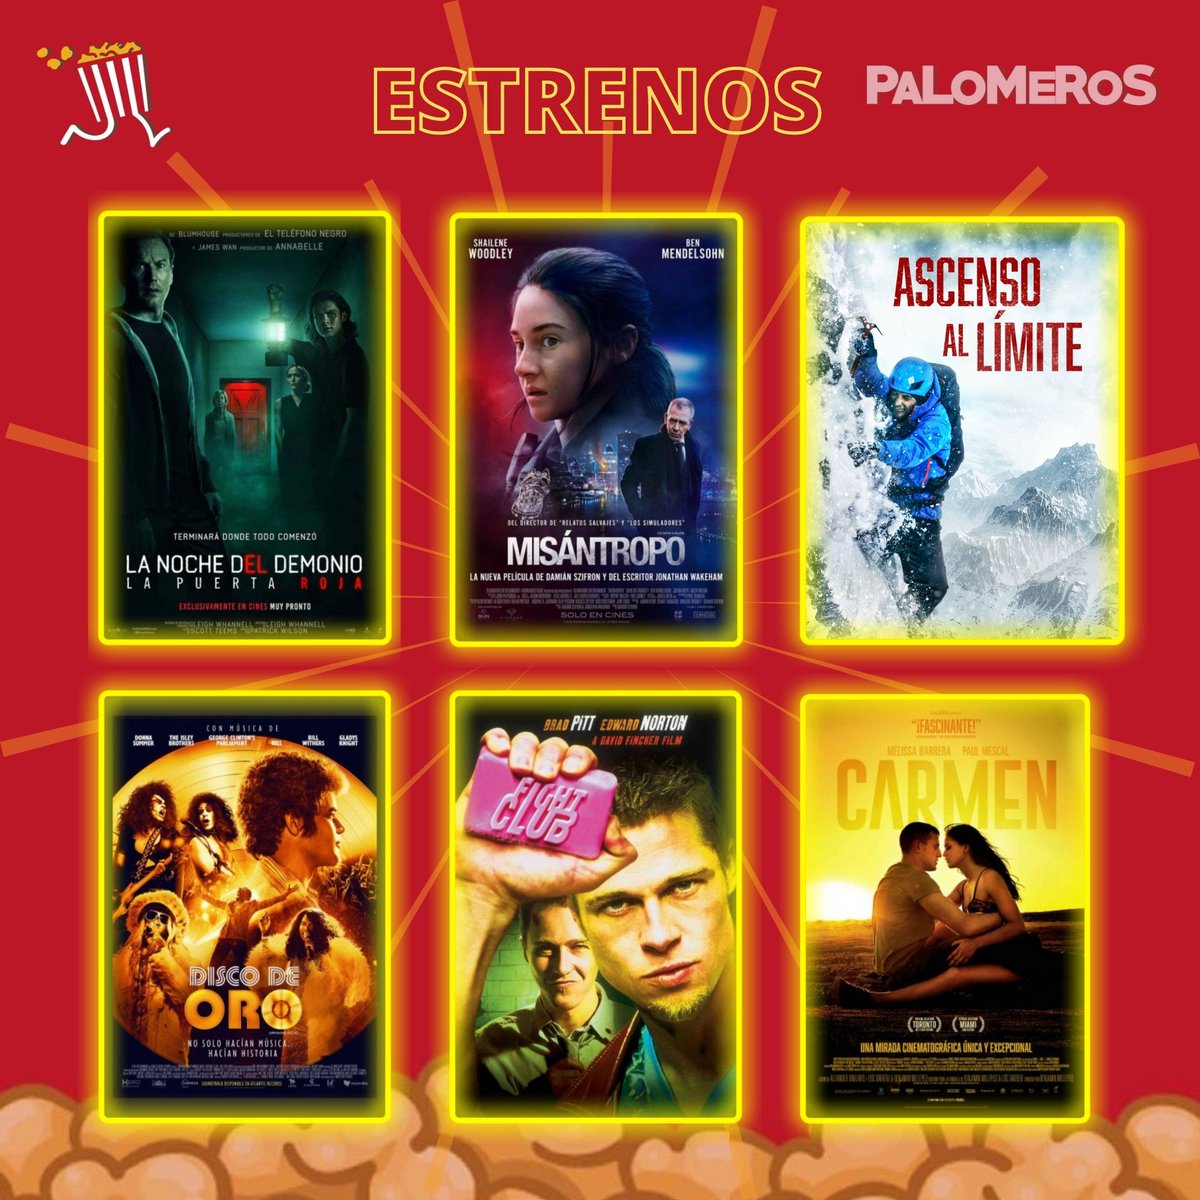 Estos son los estrenos de la semana🎞️ 

🍿#LaNocheDelDemonioLaPuertaRoja
🍿#Misantropo
🍿#AscensoAlLimite
🍿#DiscoDeOro
🍿#ElClubdelaPelea (Exclusiva Cinemex)
🍿#Carmen